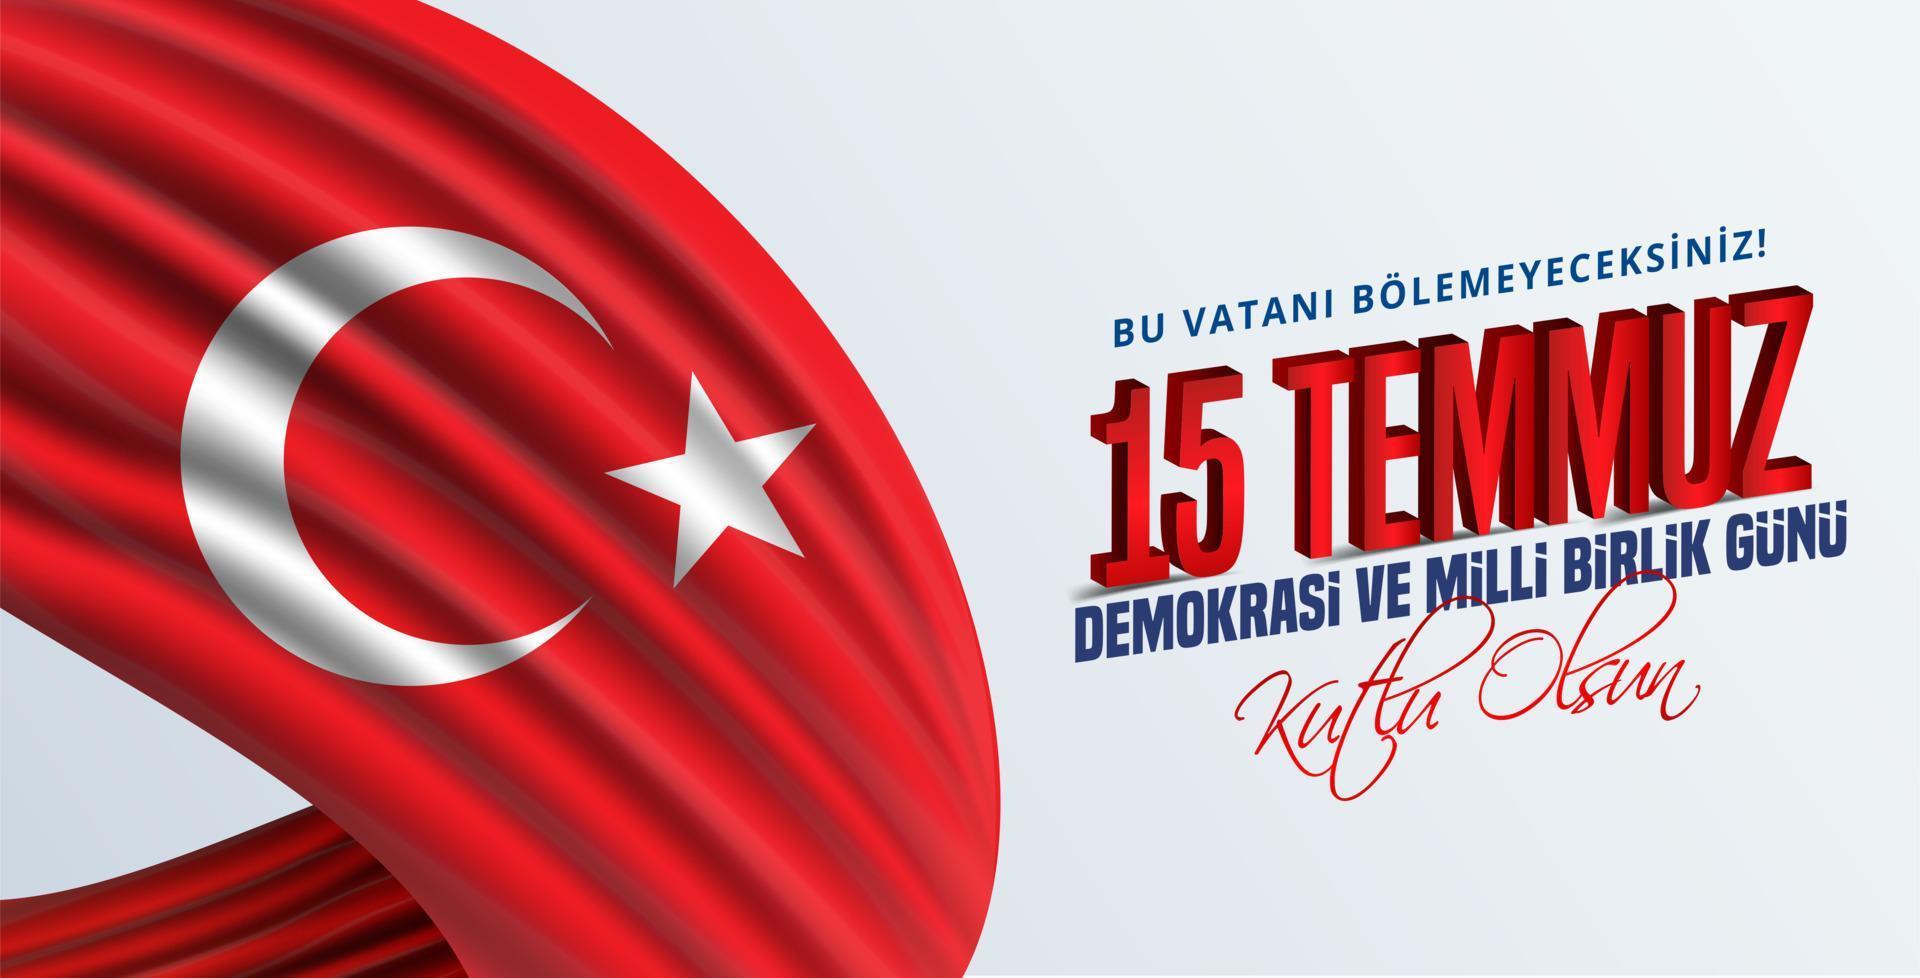 vektor illustration. turkisk semester. översättning från turkiska, demokrati- och nationell enhetsdag för Turkiet, veteraner och martyrer den 15 juli. med semester